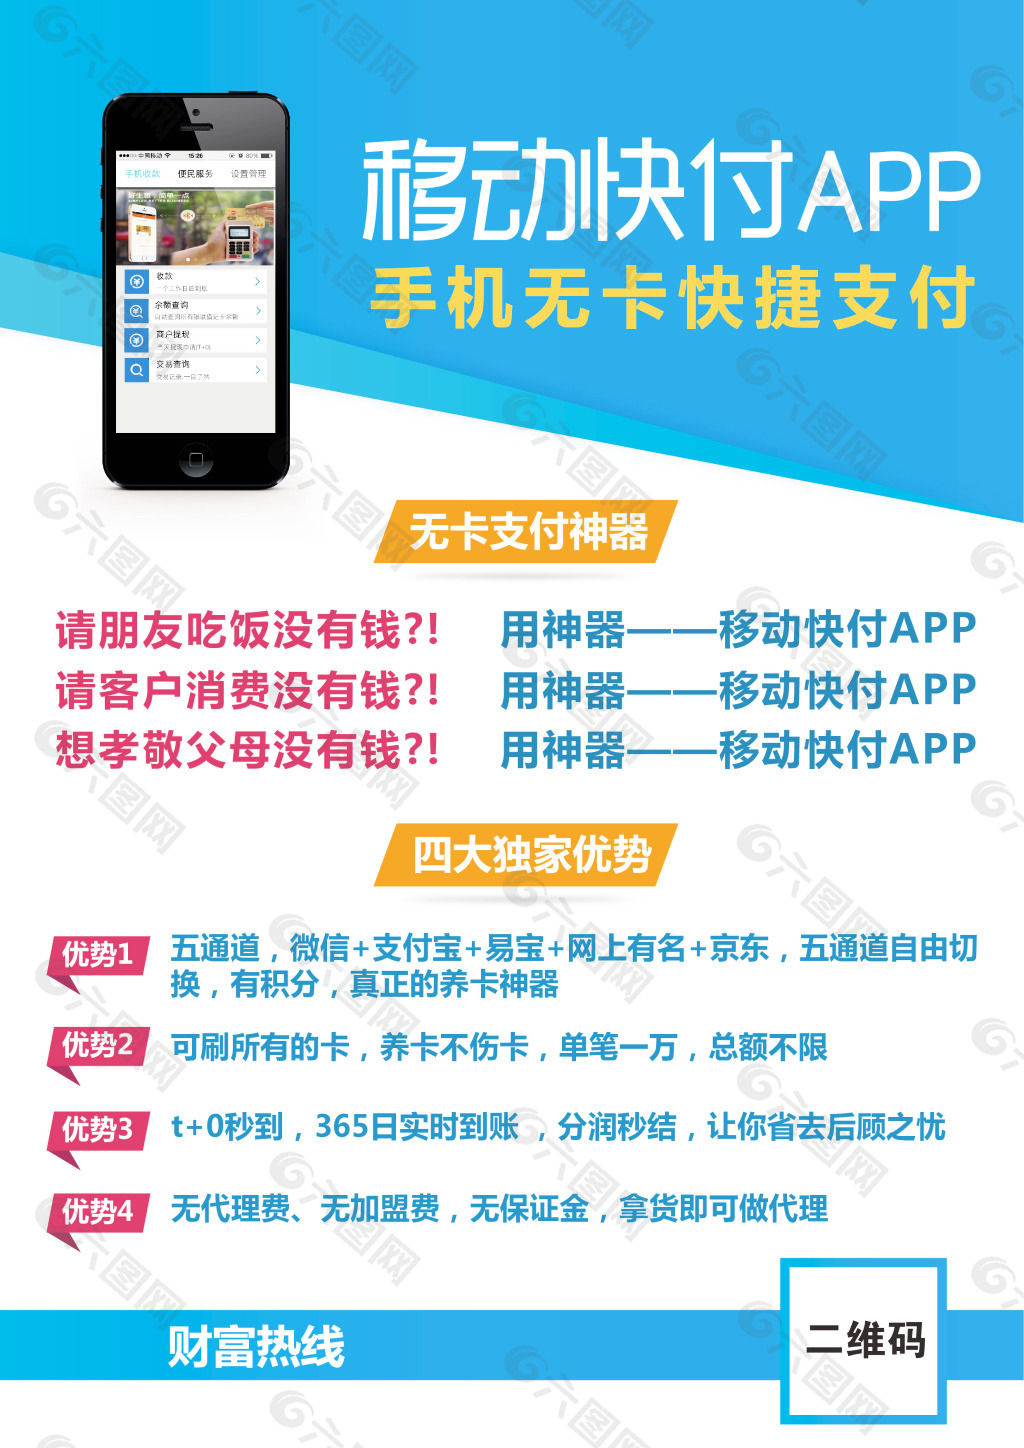 手机APP支付软件宣传海报